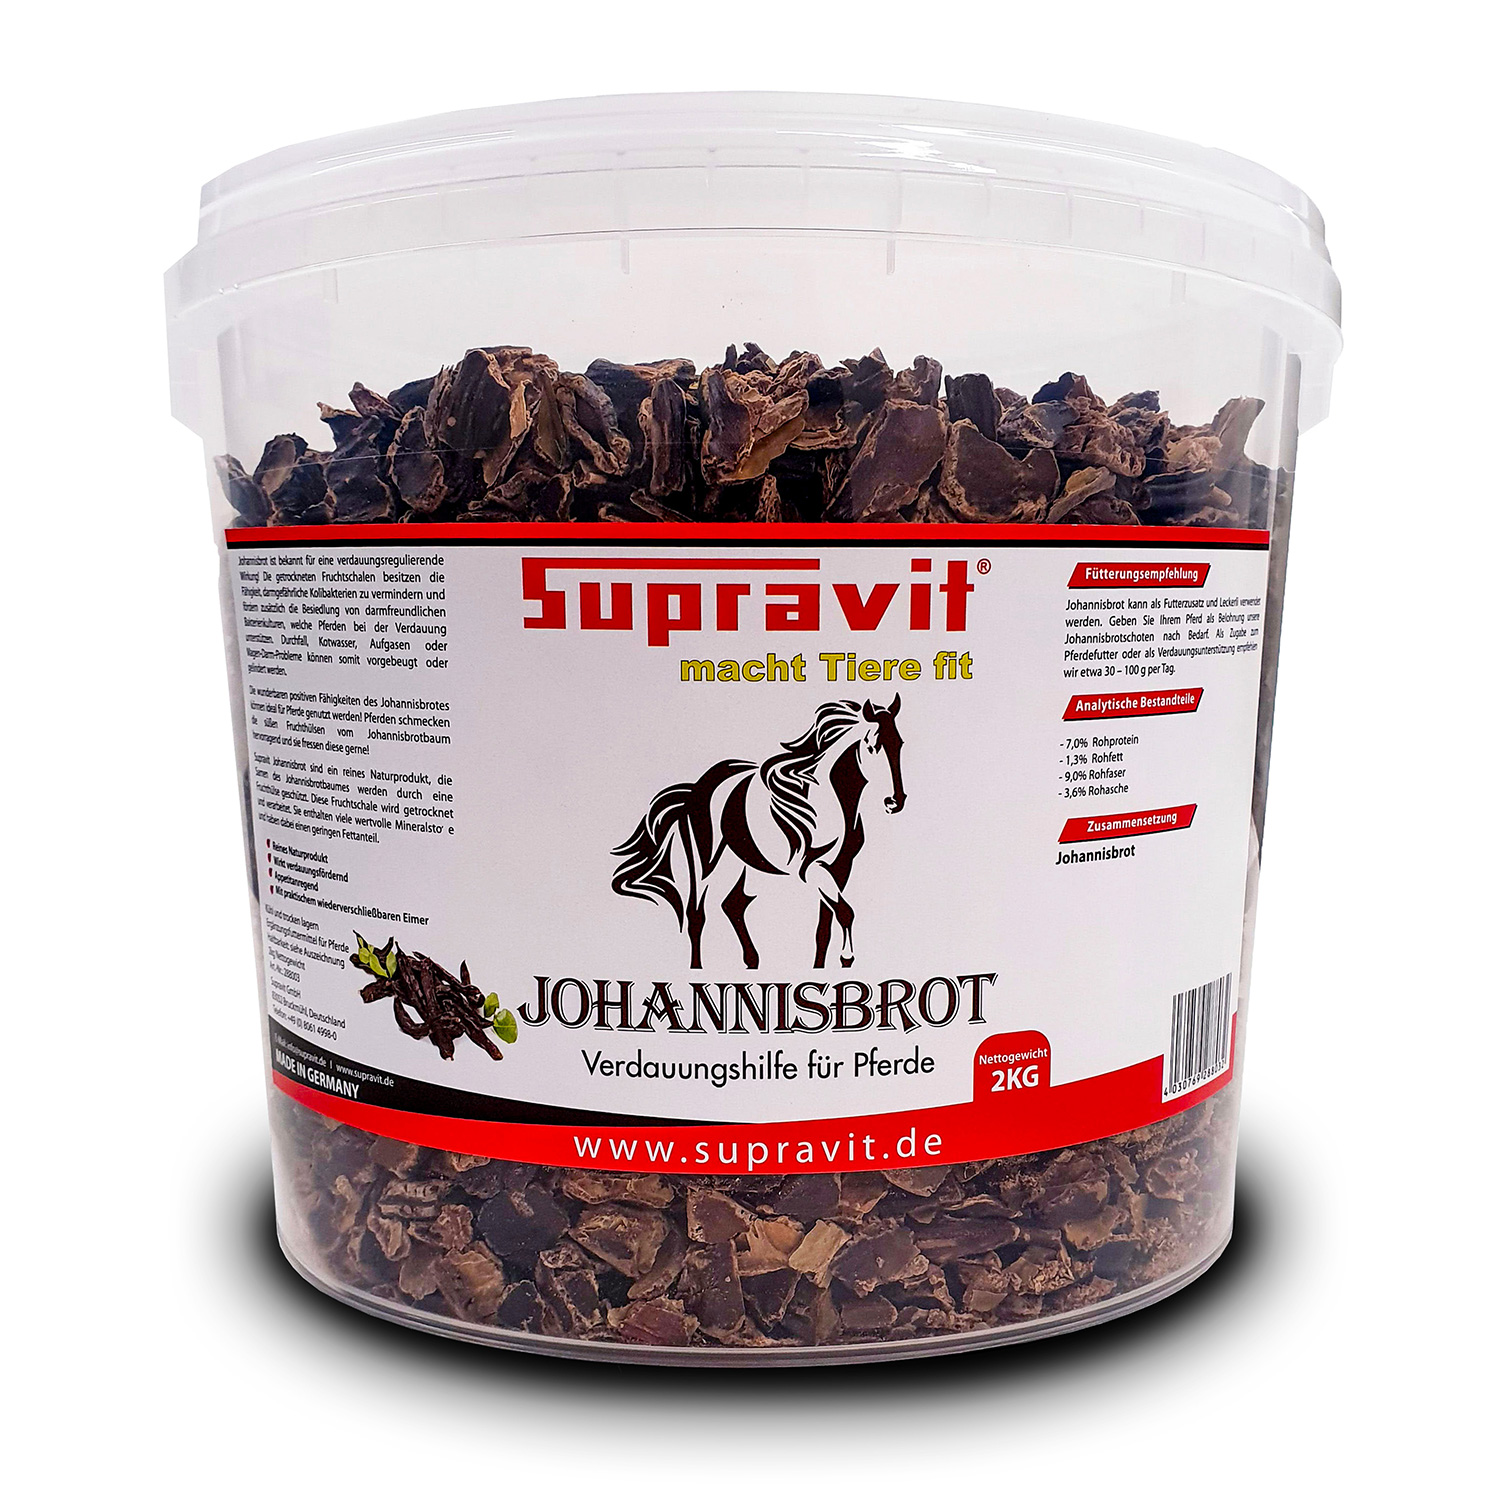 Supravit Johannisbrot 2kg - Verdauungshilfe für Pferde